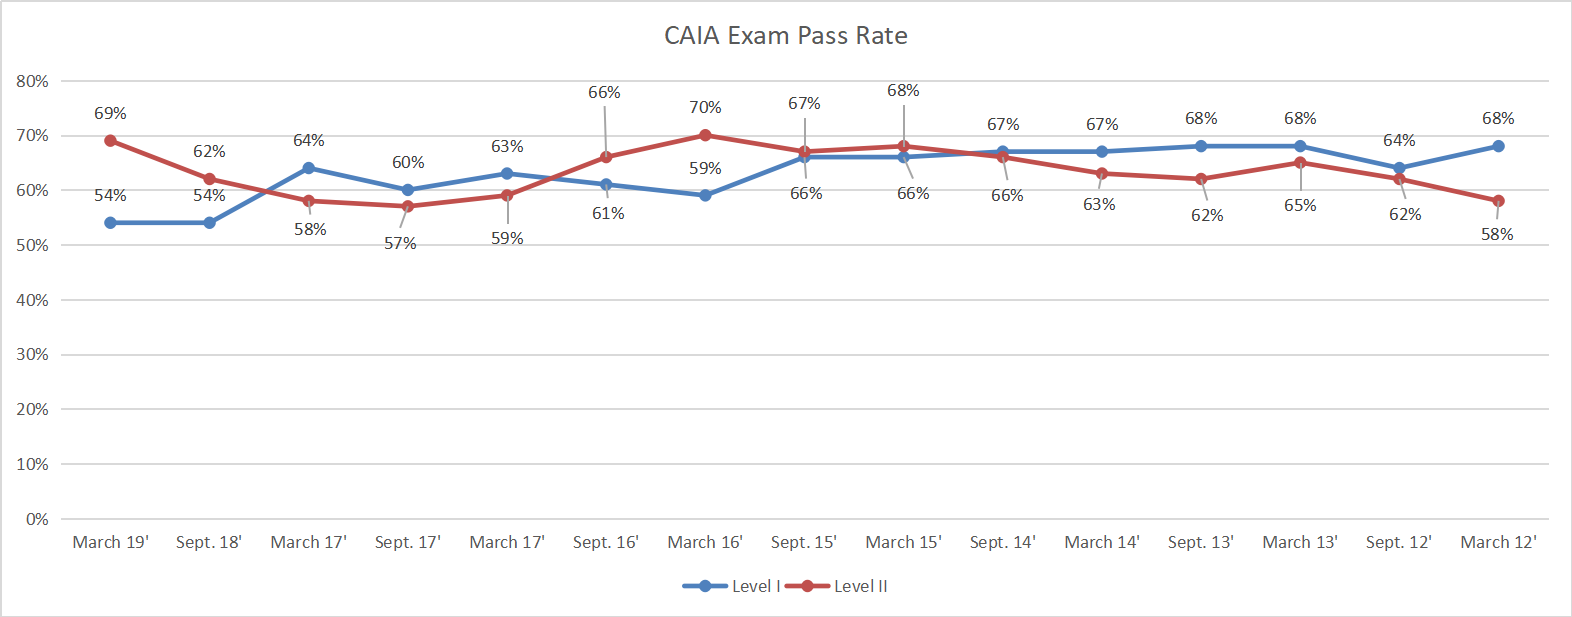 CAIA考试历年通过率